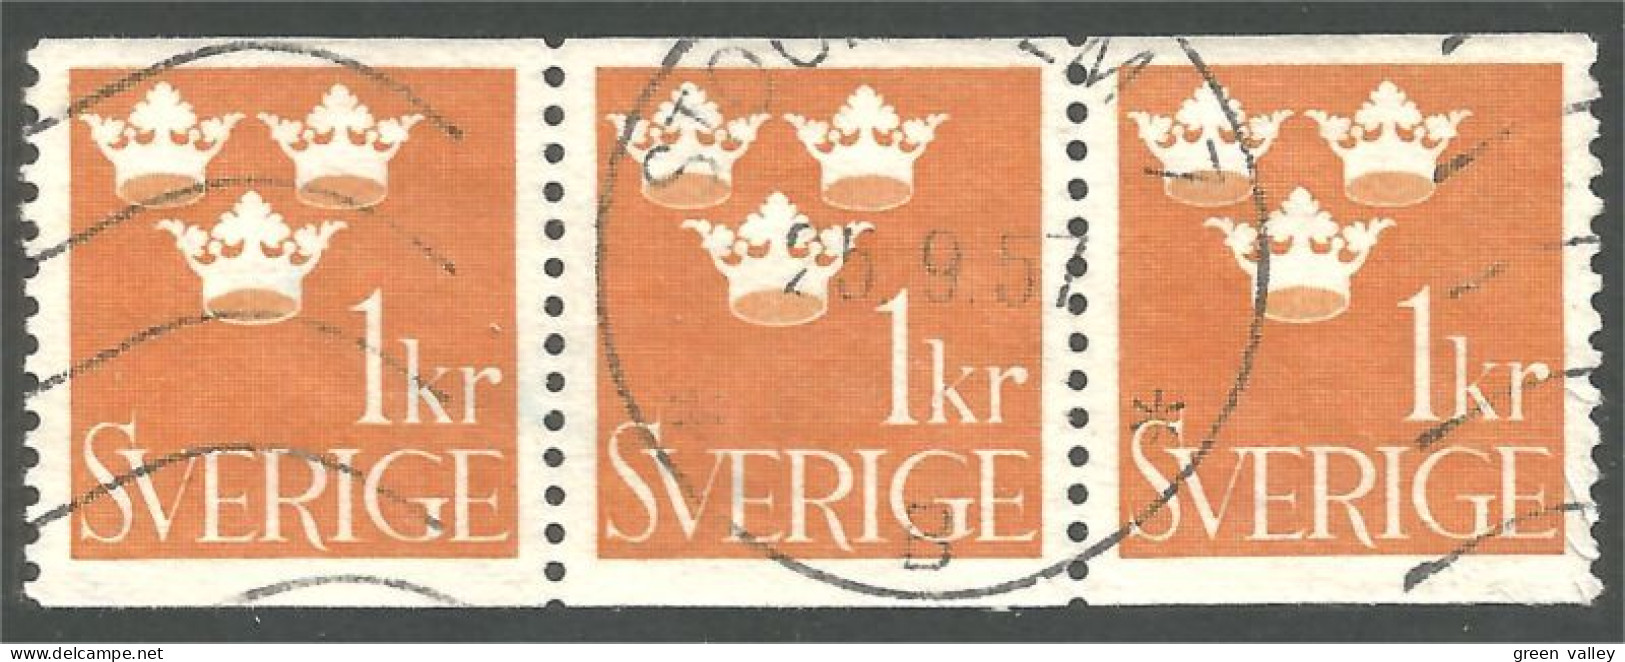 840 Sweden 1939 Trois Couronnes Three Crowns 1kr Orange Bande Strip 3 (SWE-426) - Oblitérés